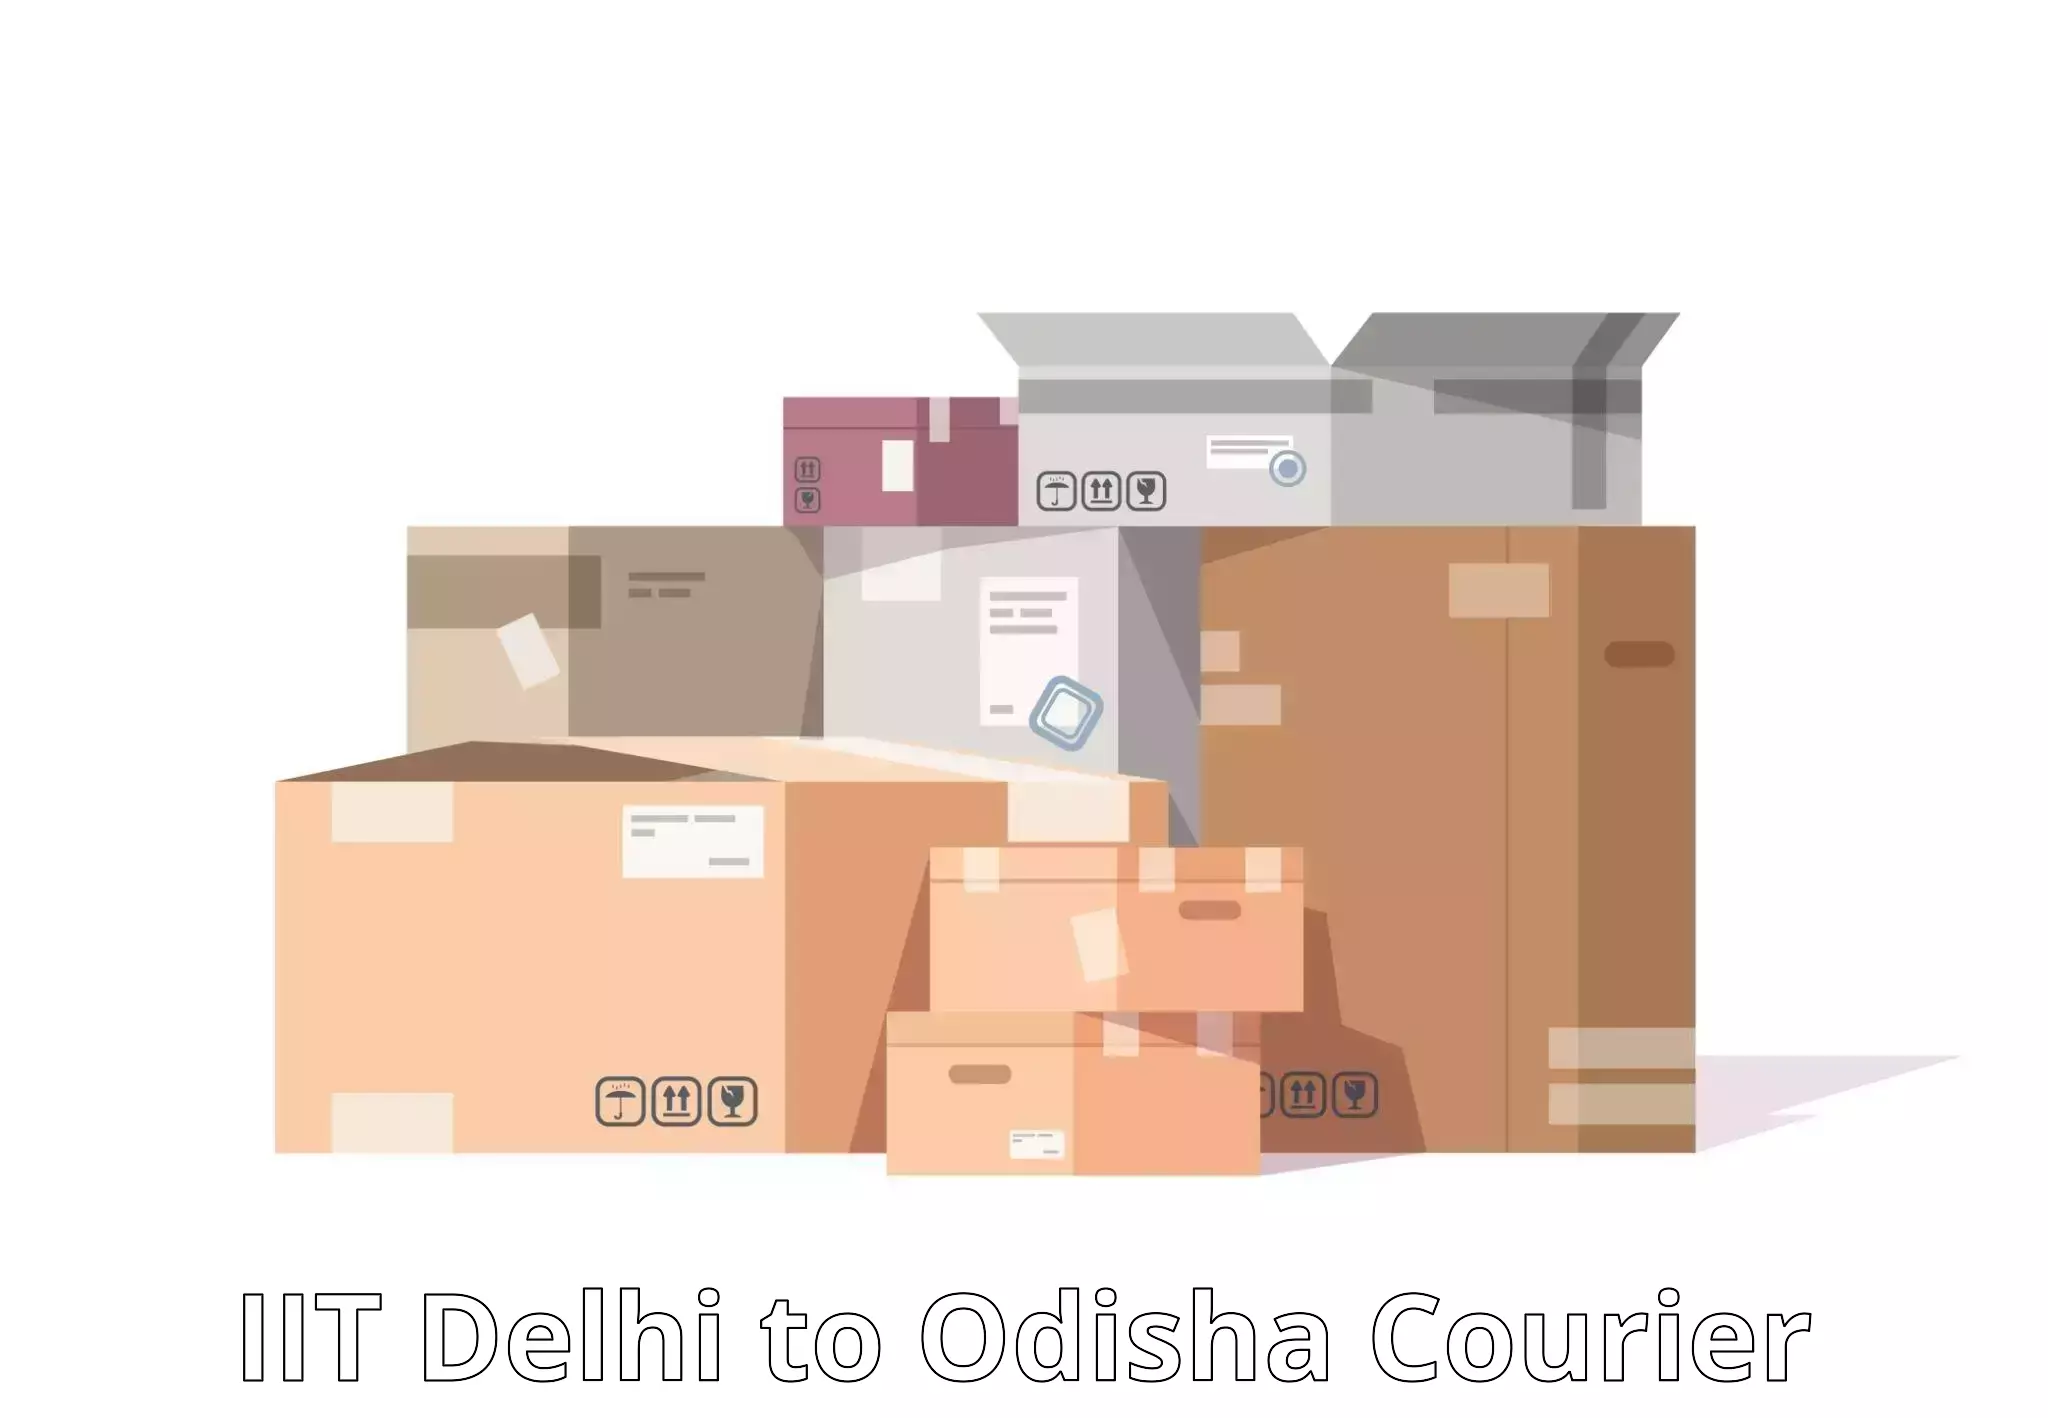 E-commerce fulfillment IIT Delhi to Ukhunda